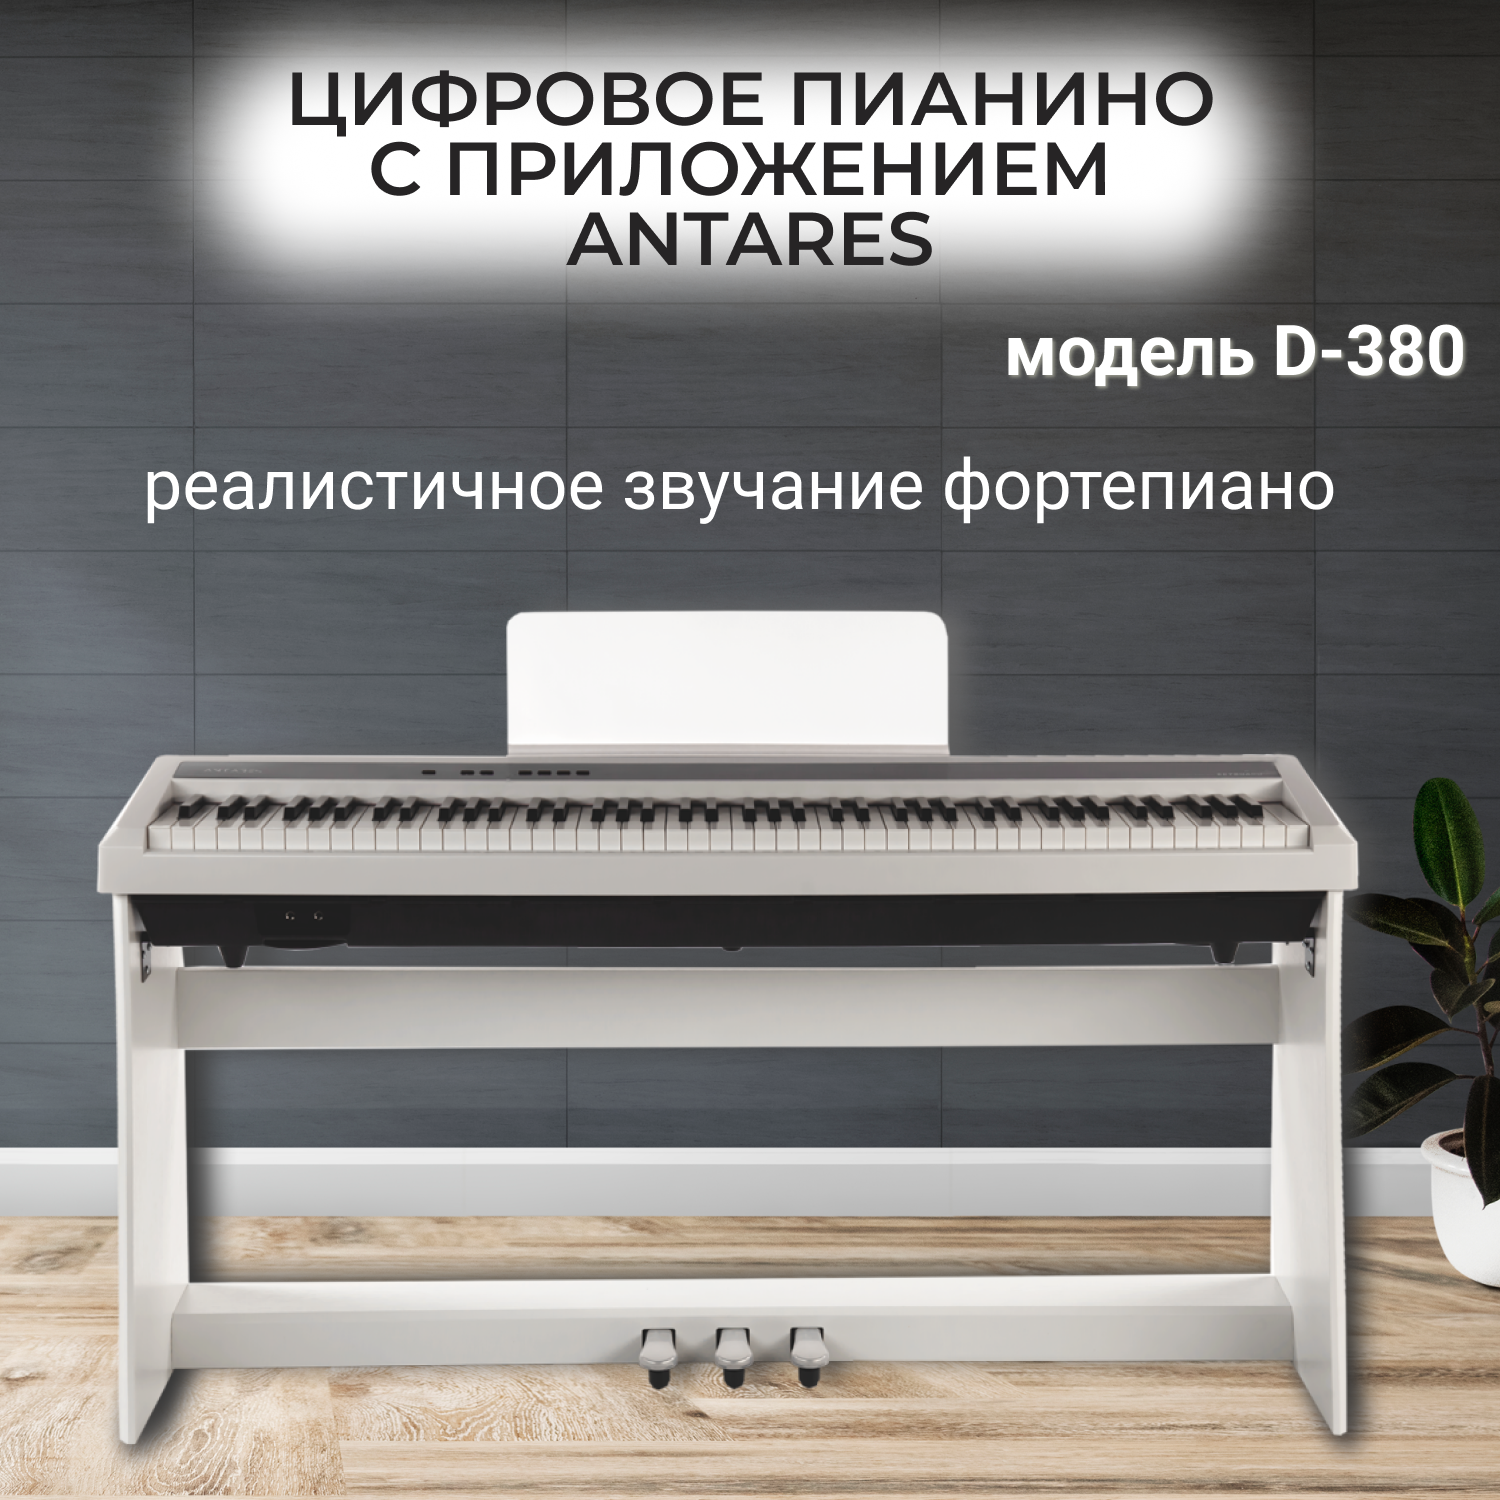 Antares D-380 цифровое фортепиано с приложением